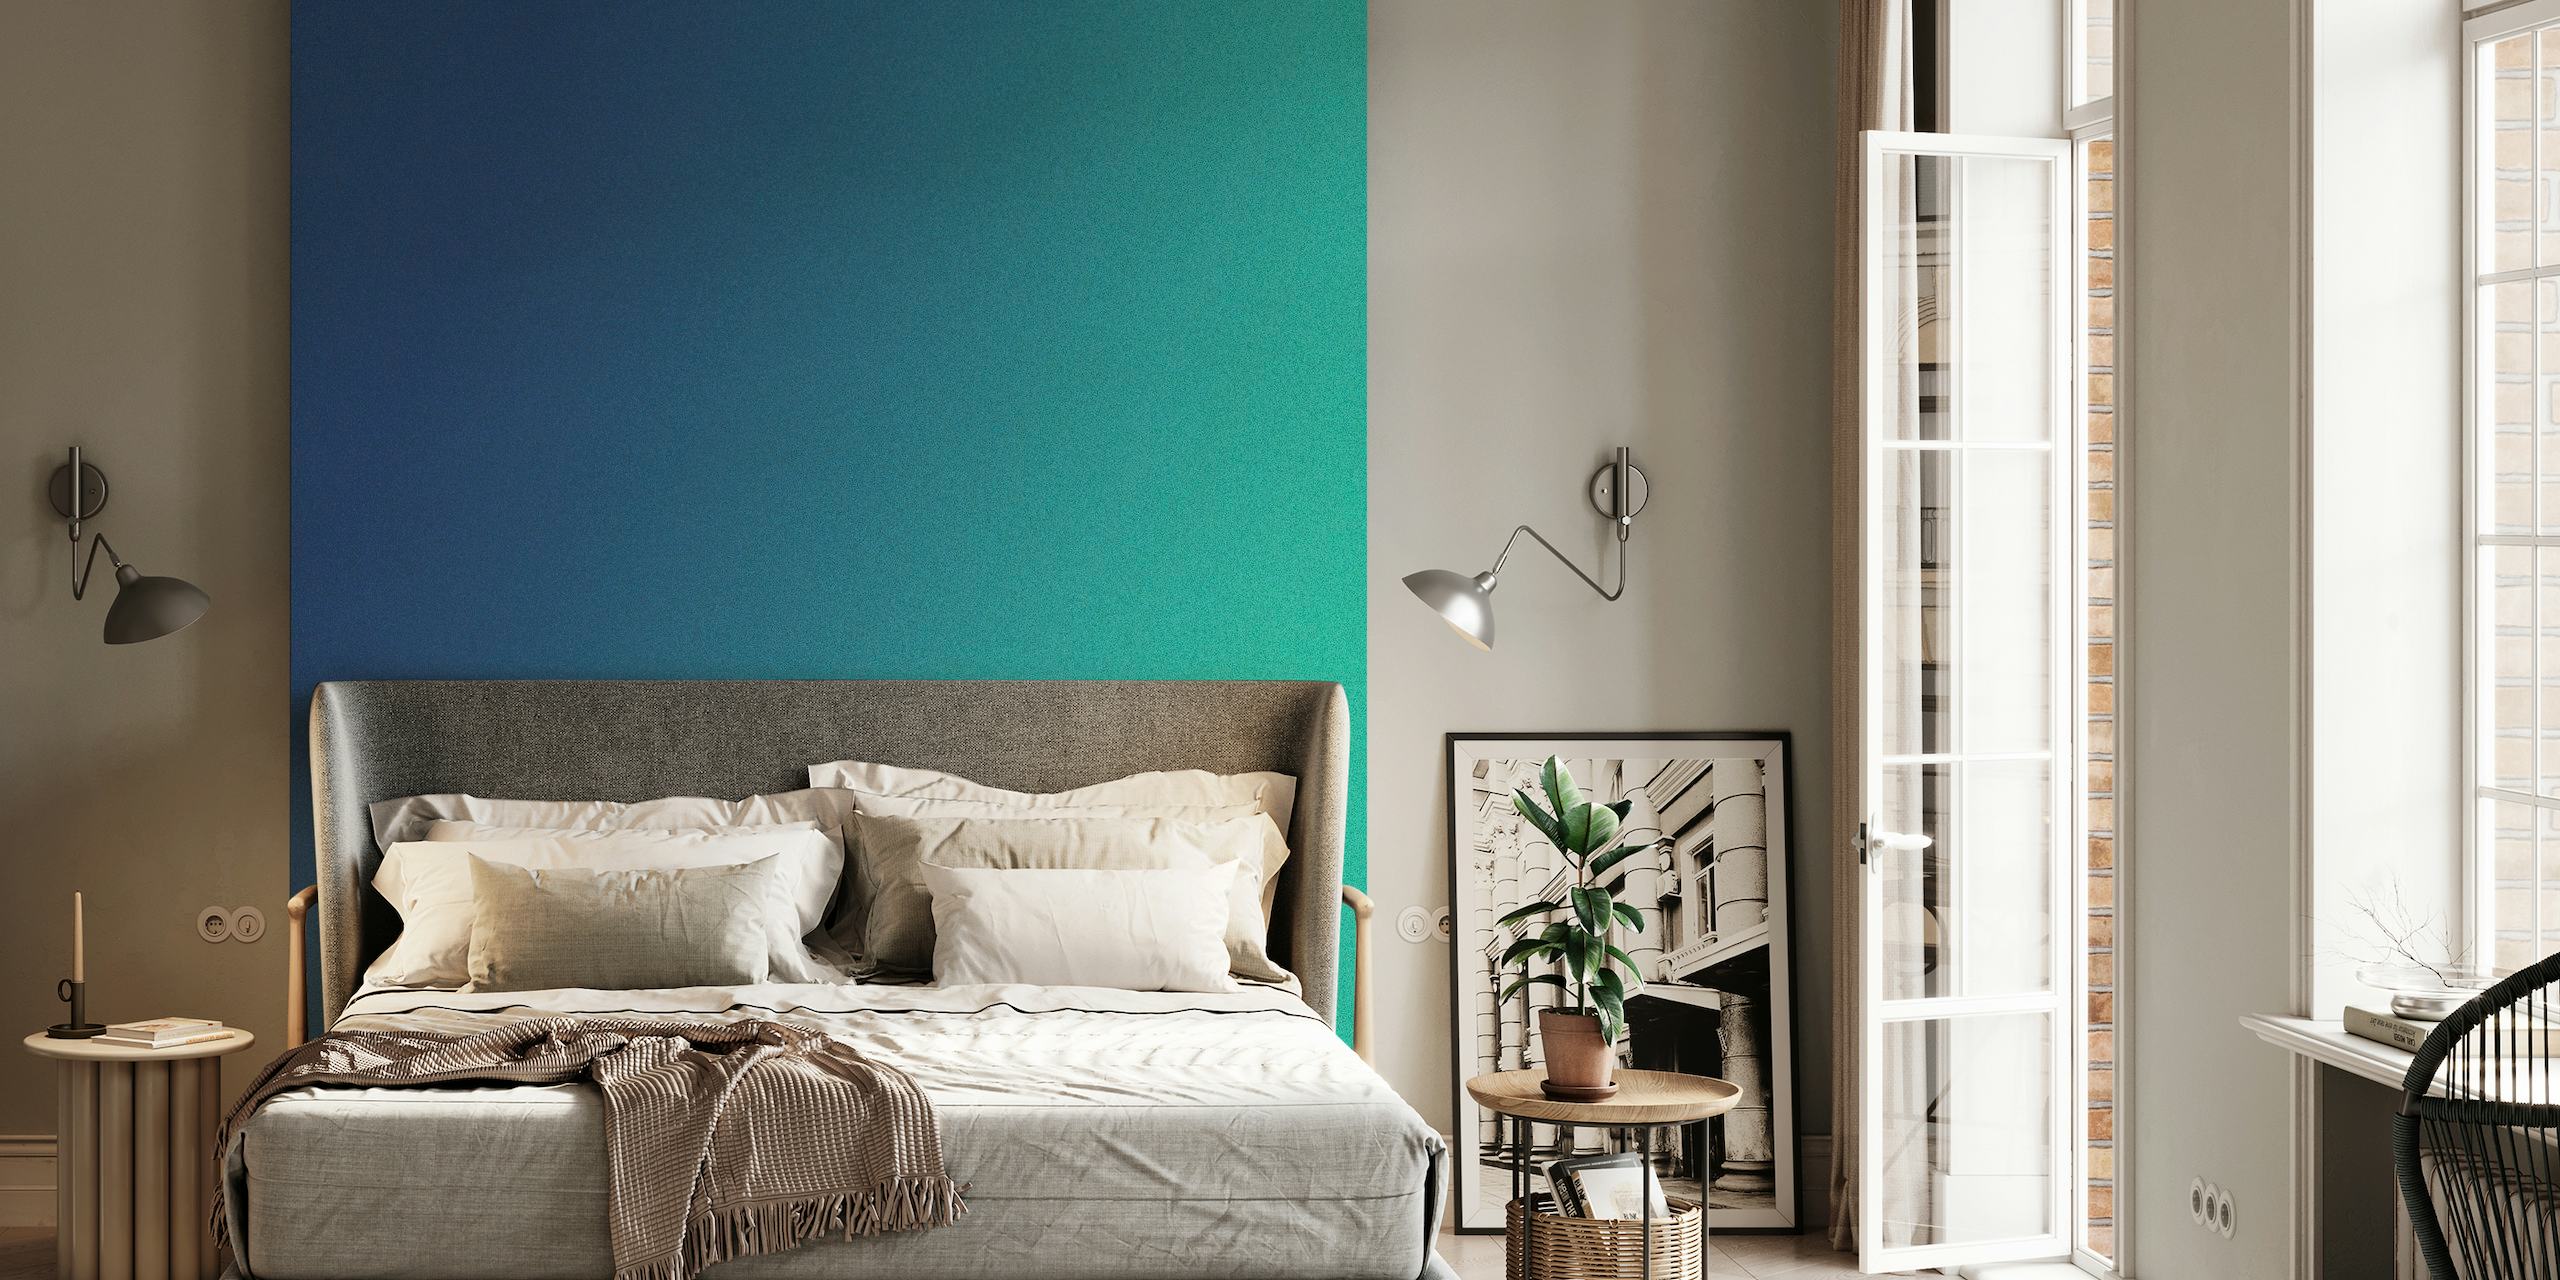 Fotomural vinílico de parede gradiente Soft Serenity com transição verde-azulado para azul celeste